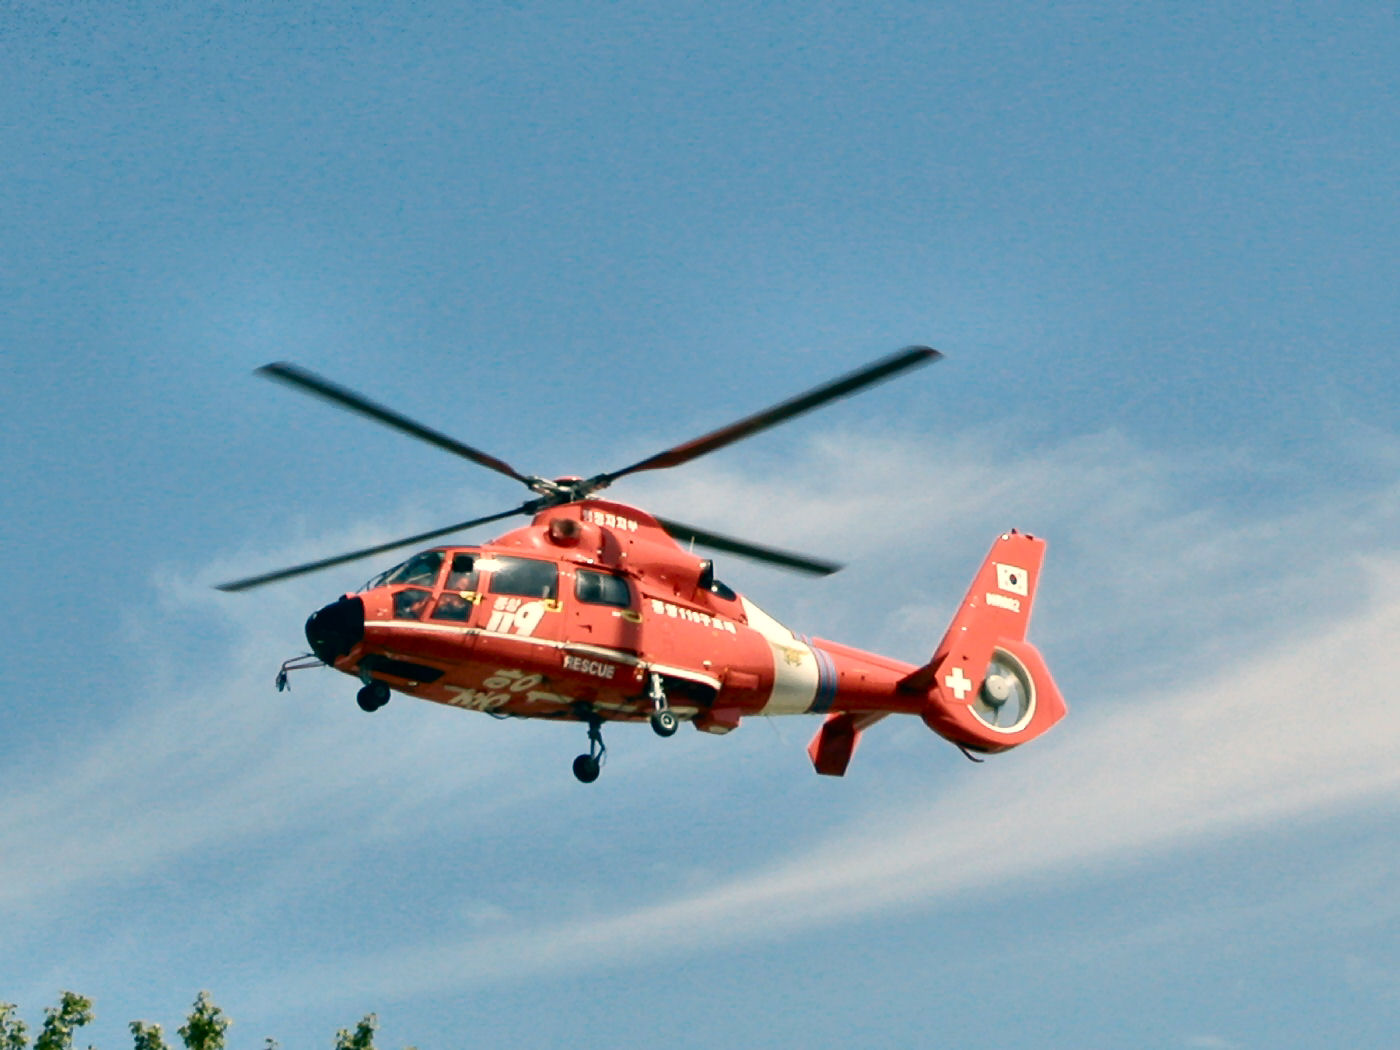 Télécharger des fonds d'écran Eurocopter As365 Dauphin HD